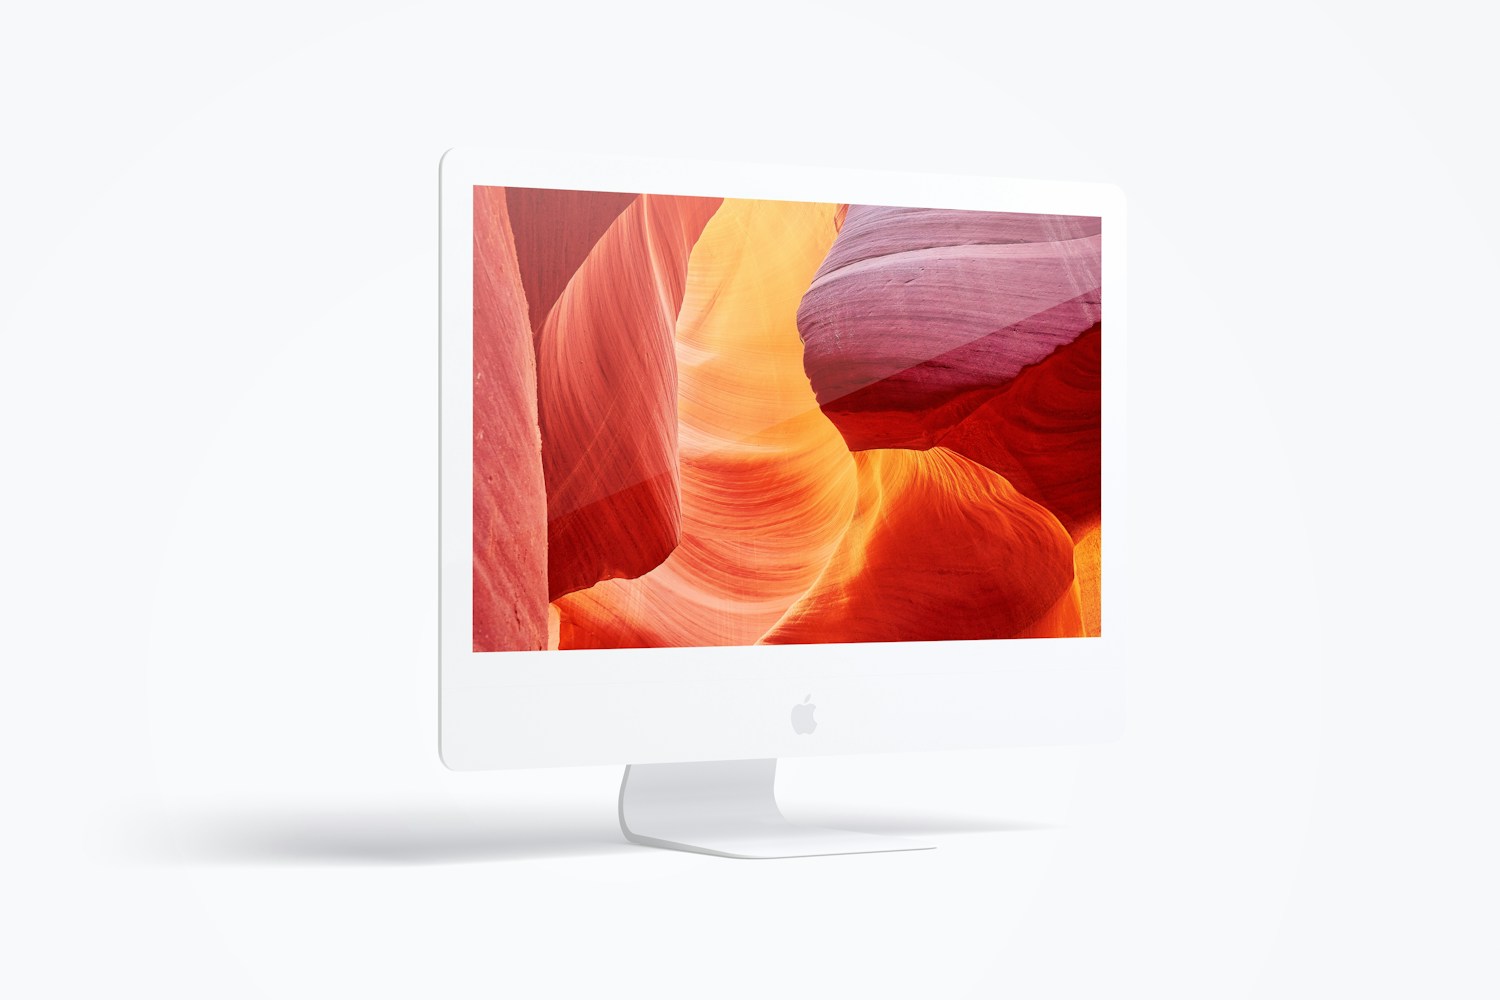 Maqueta de iMac 27” Multicolor, Vista Izquierda